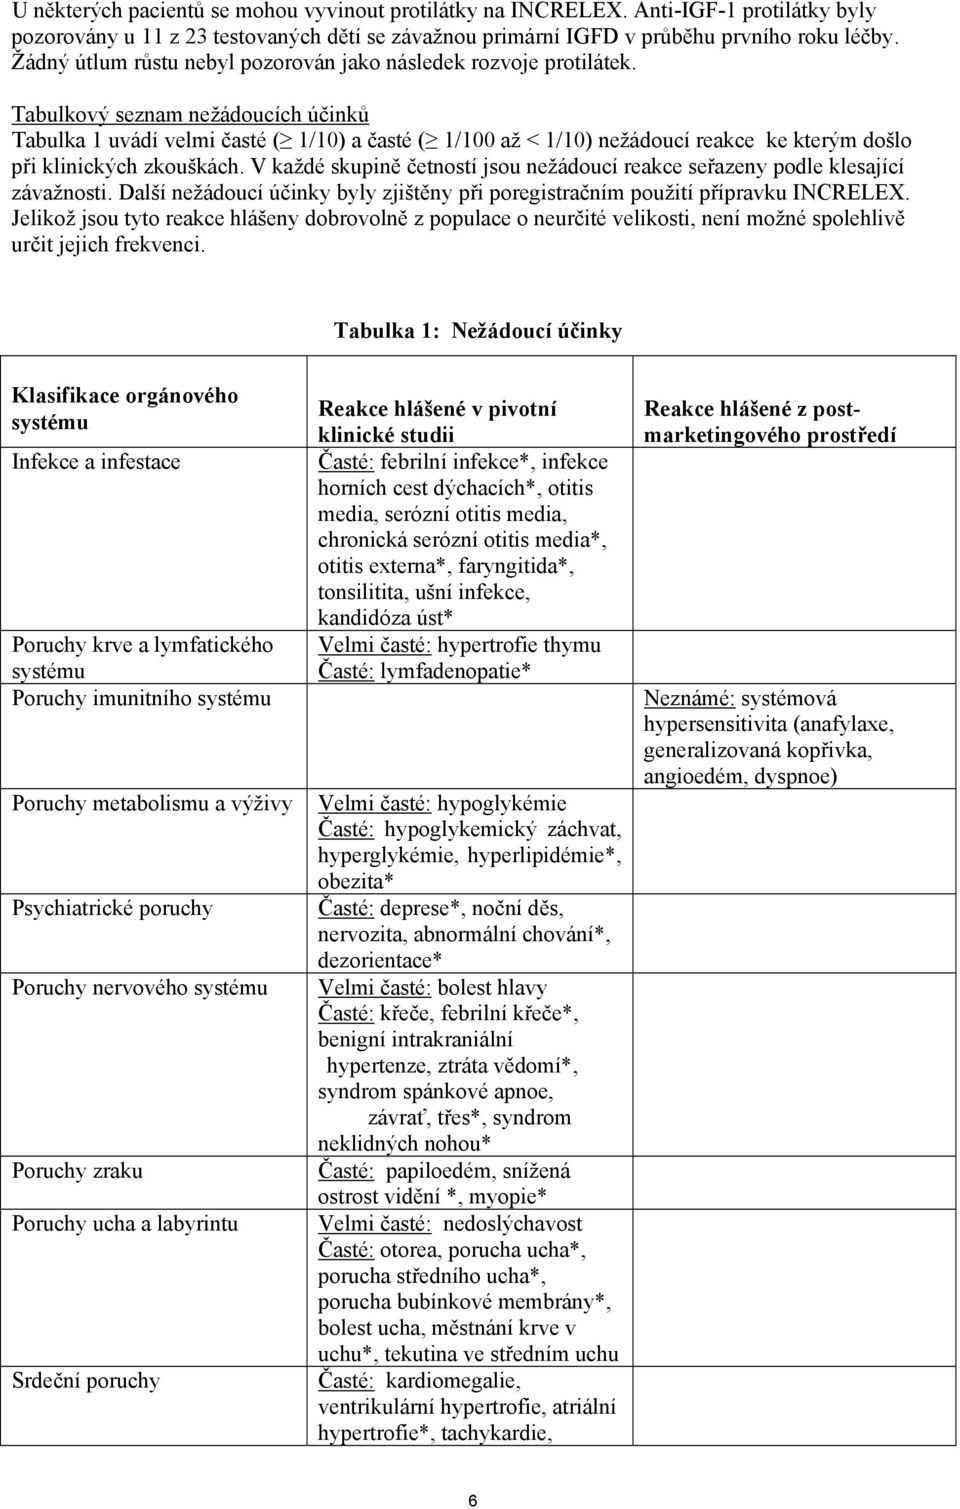 Tabulkový seznam nežádoucích účinků Tabulka 1 uvádí velmi časté ( 1/10) a časté ( 1/100 až < 1/10) nežádoucí reakce ke kterým došlo při klinických zkouškách.